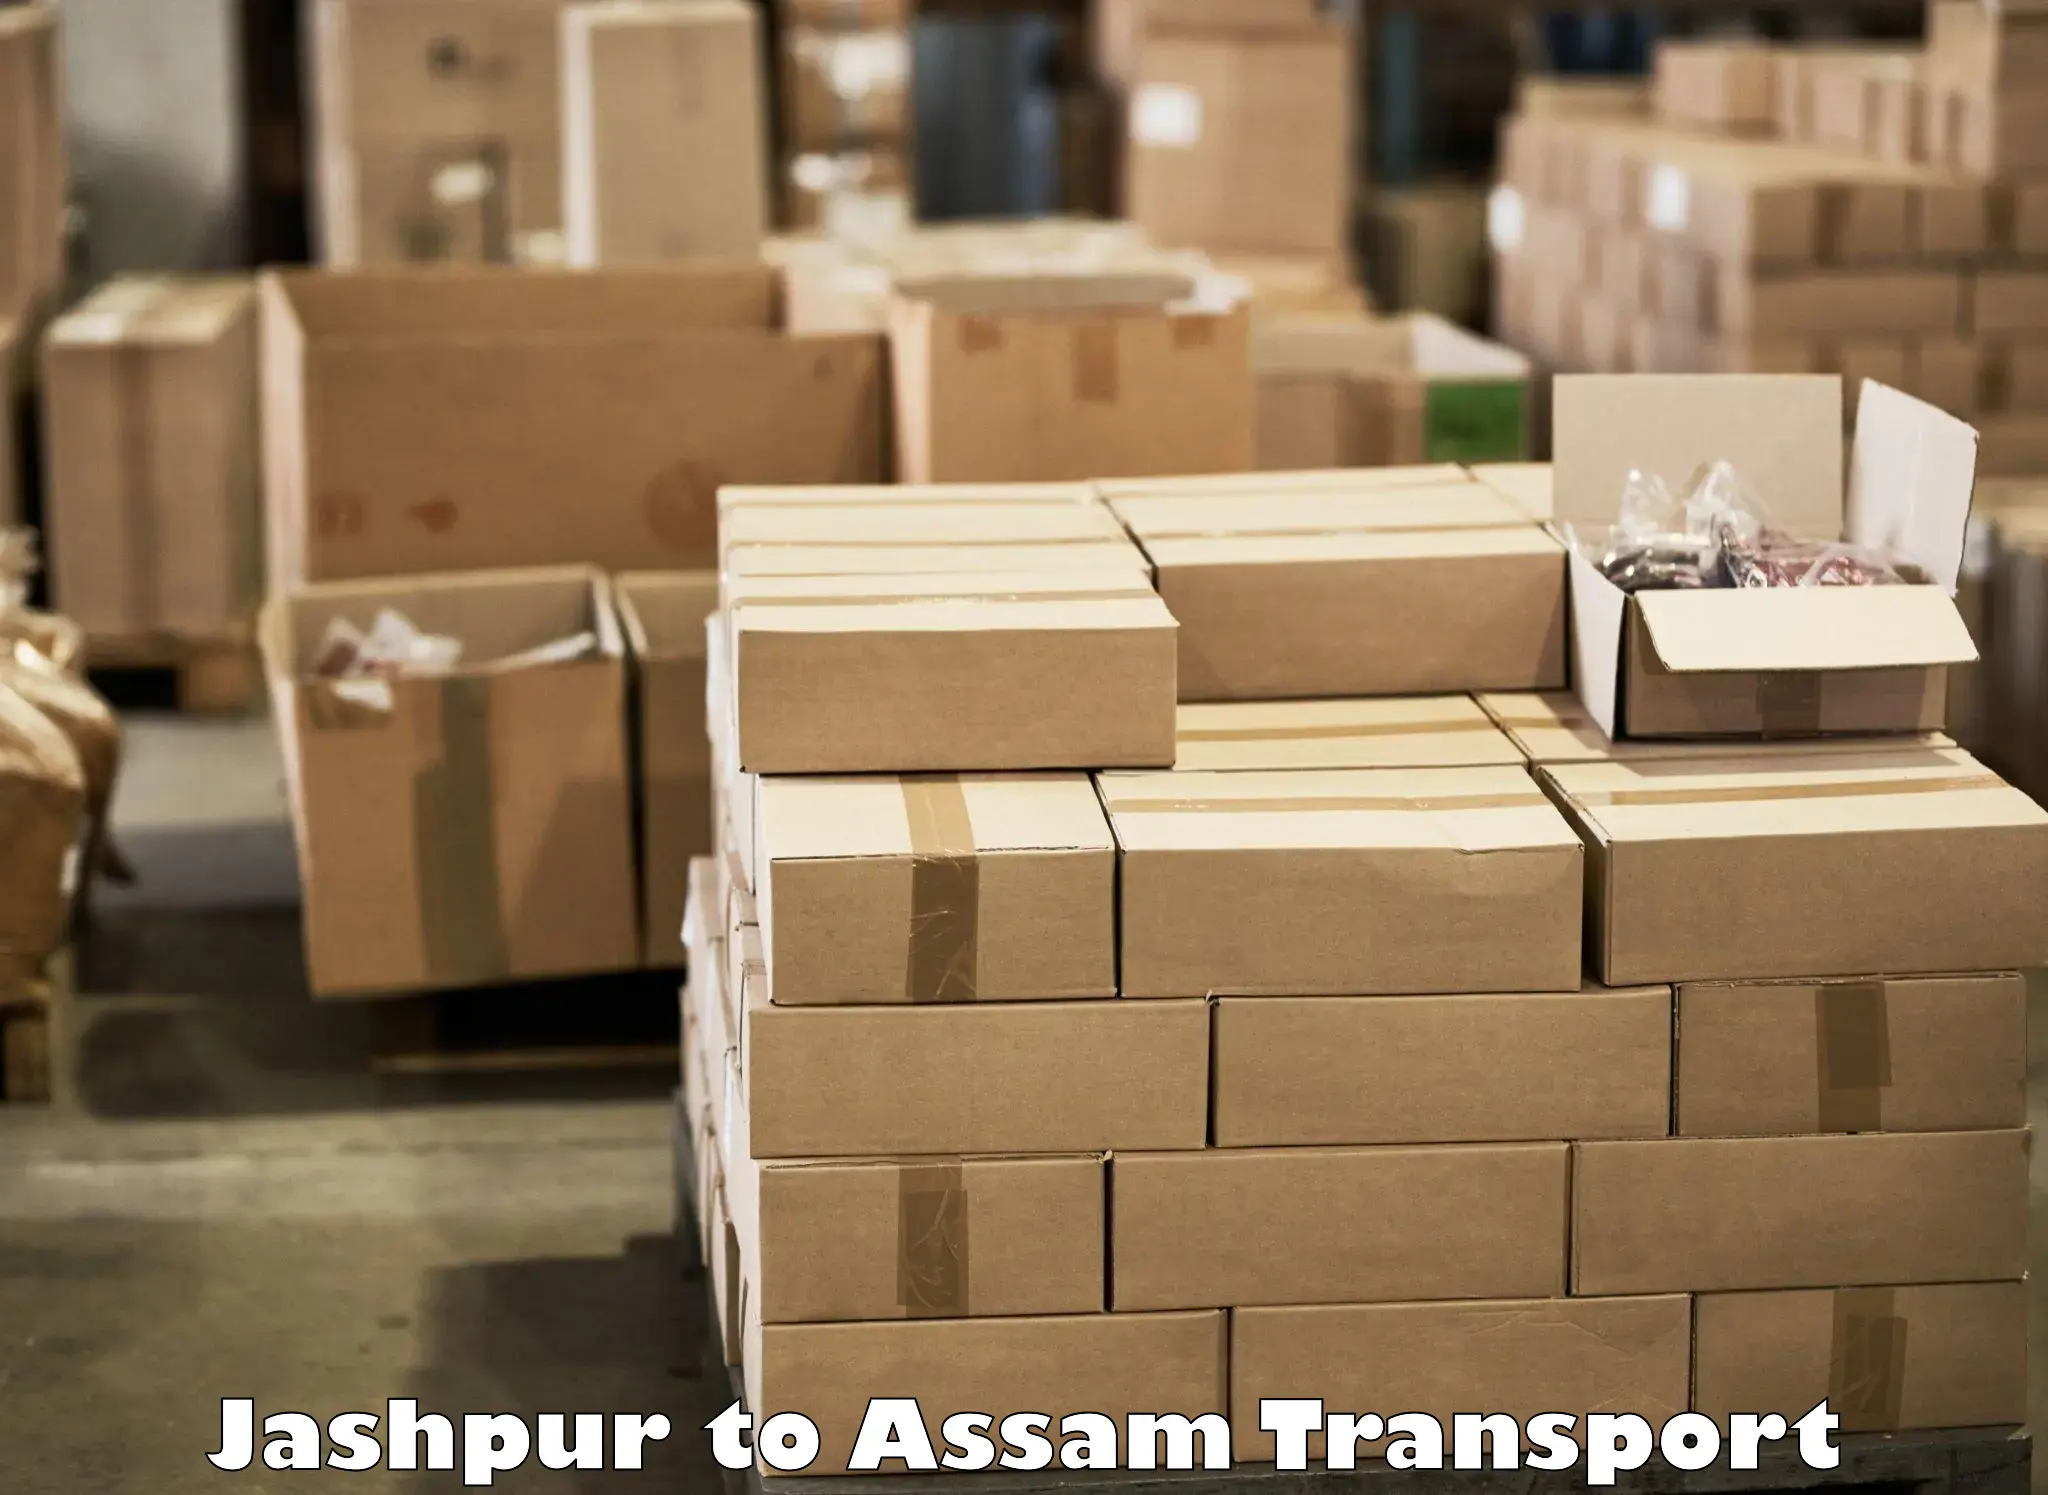 Transport shared services Jashpur to Badarpur Karimganj